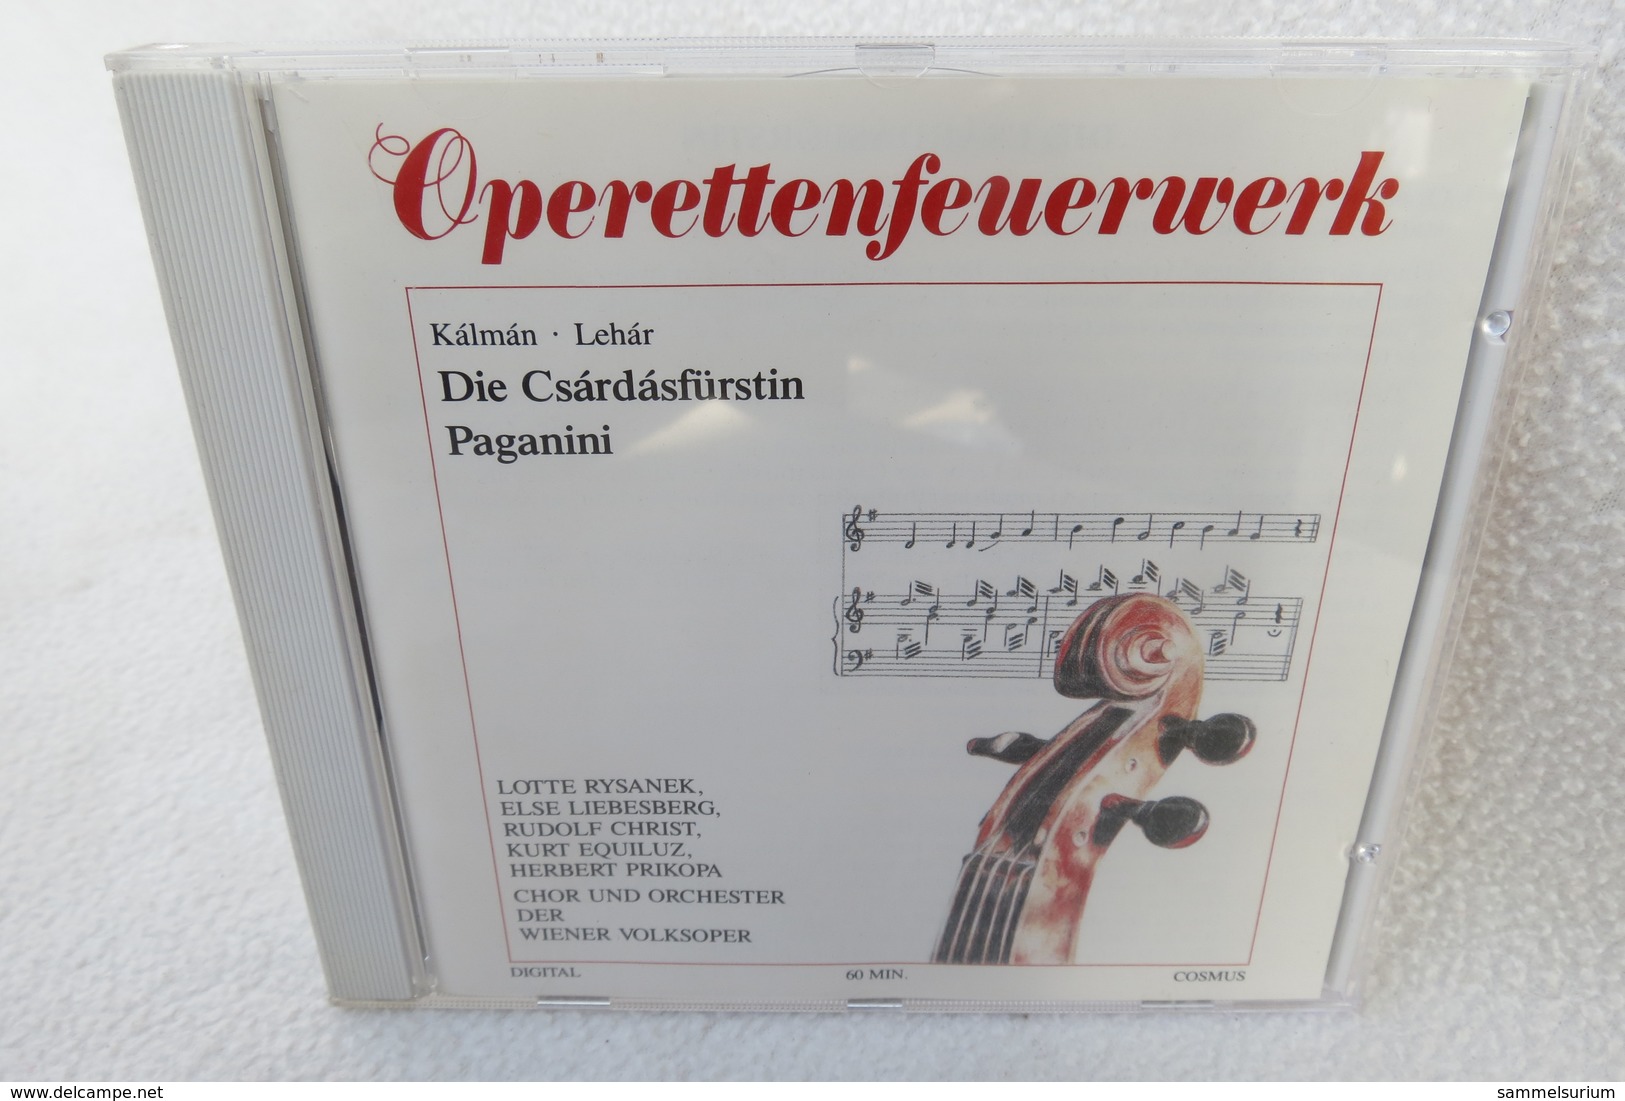 CD "Operettenfeuerwerk" Kálmán, Lehár - Opéra & Opérette